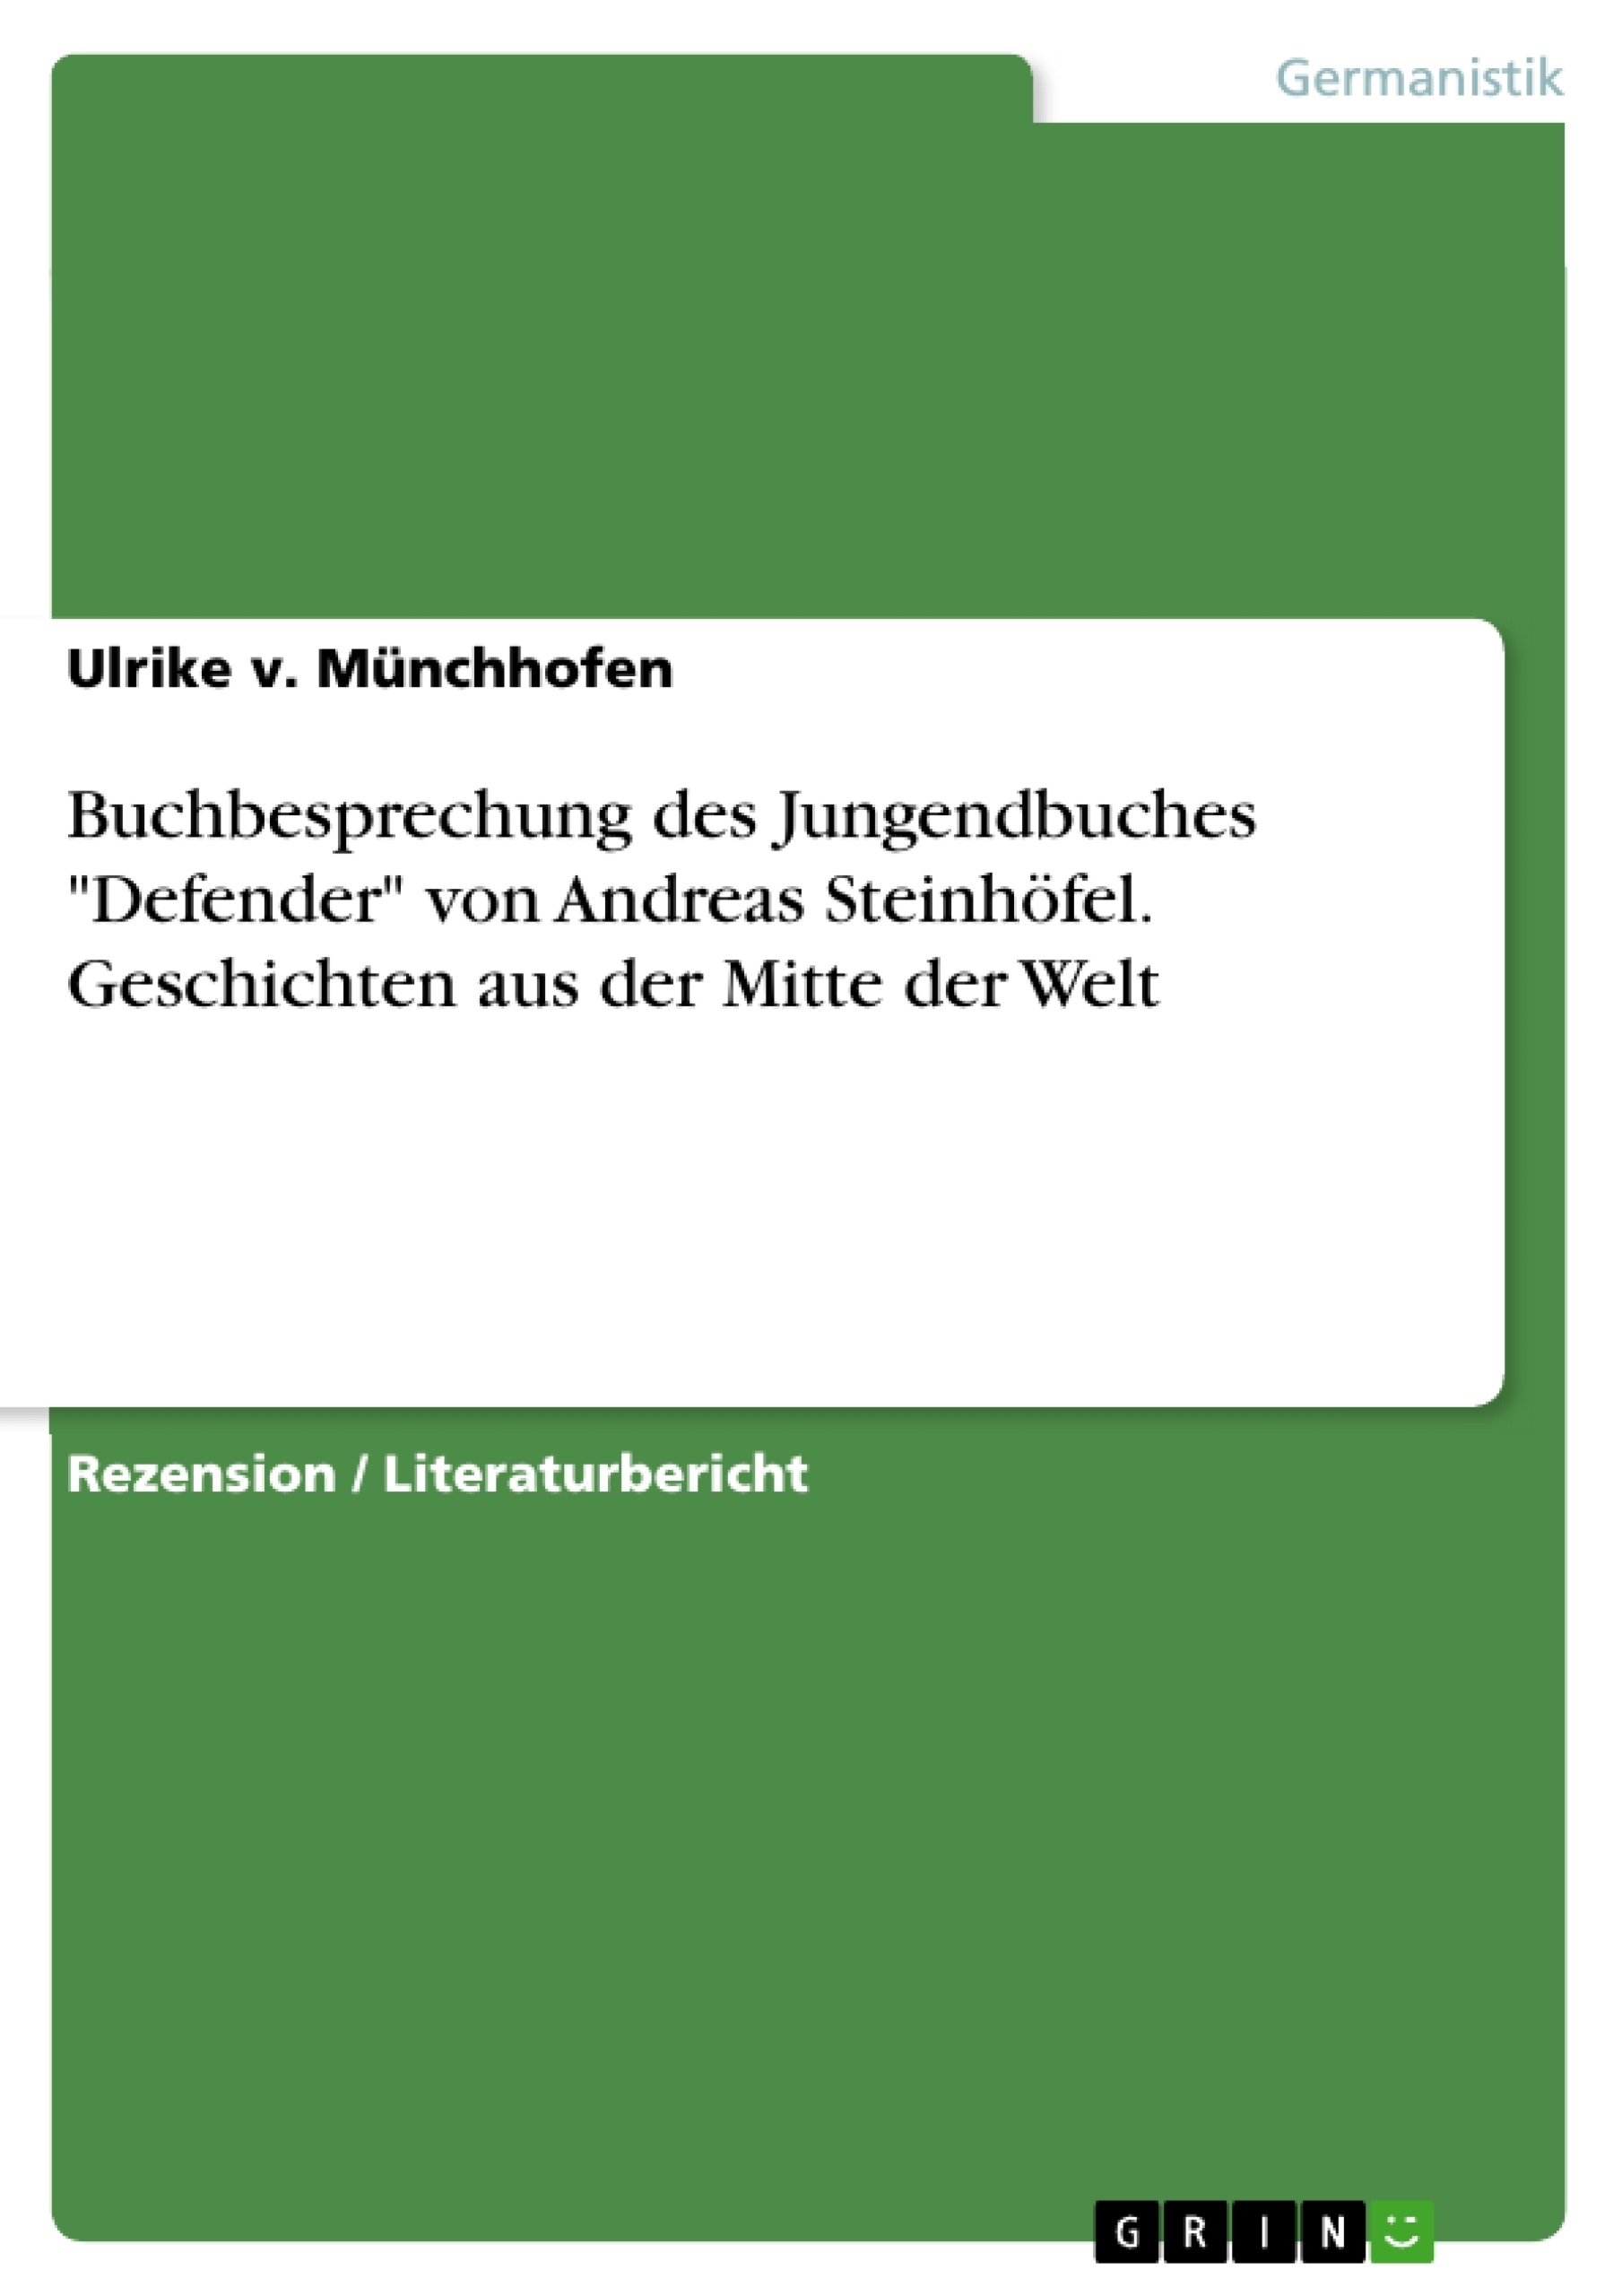 Título: Buchbesprechung des Jungendbuches "Defender" von Andreas Steinhöfel. Geschichten aus der Mitte der Welt